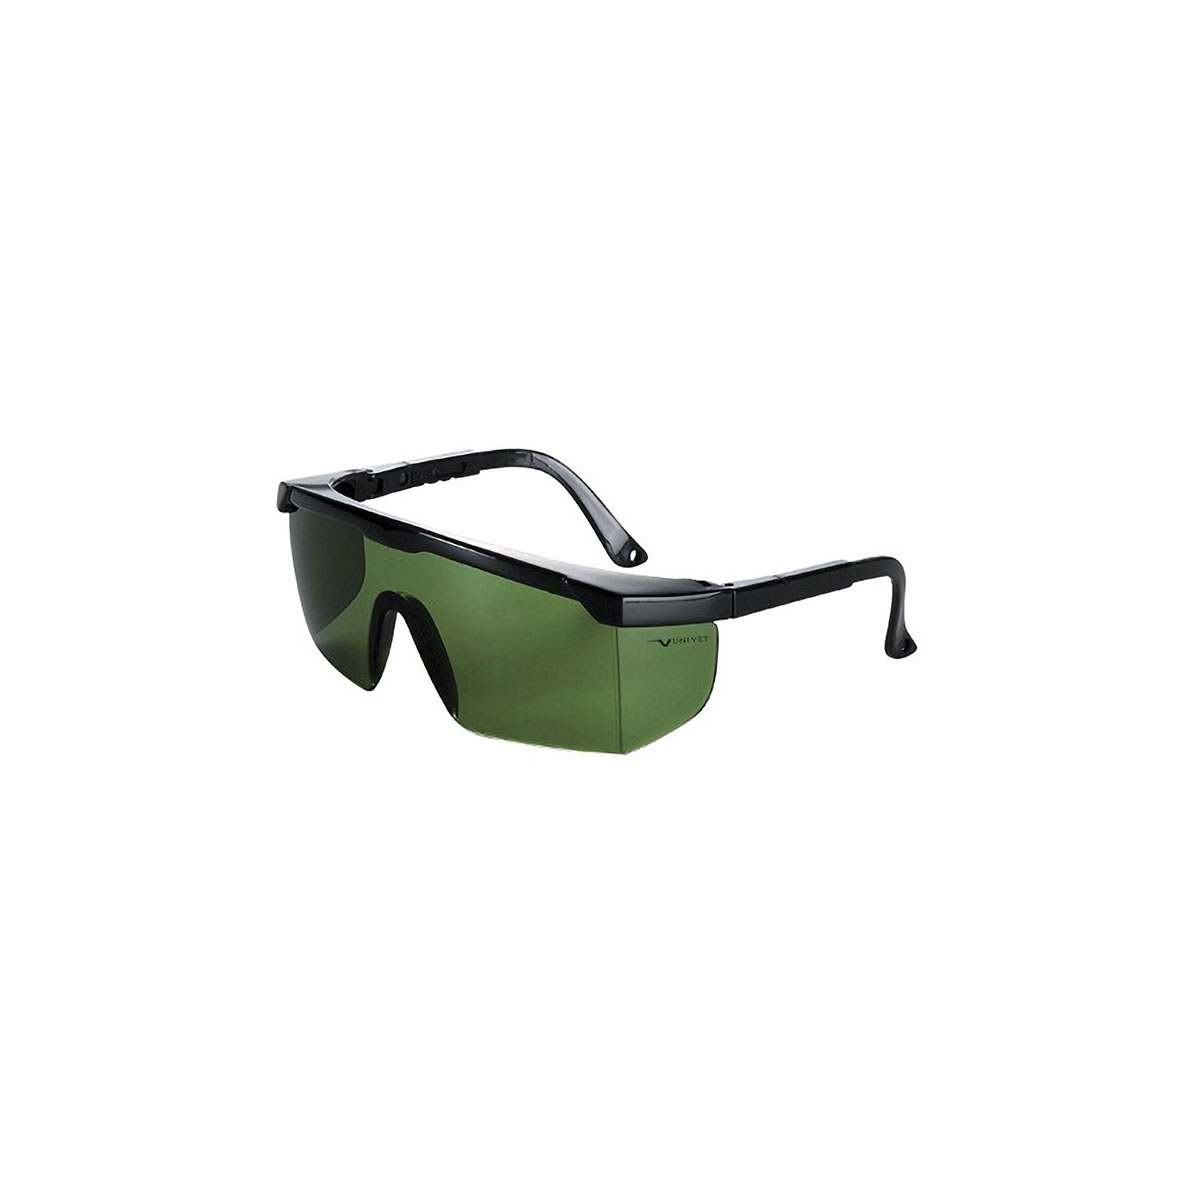 Защитные очки univet. Очки защитные most 529, 5din. Viola Valente gross 602 очки защитные. Защитные открытые очки Dog 511. Защитные очки для работы зеленые.